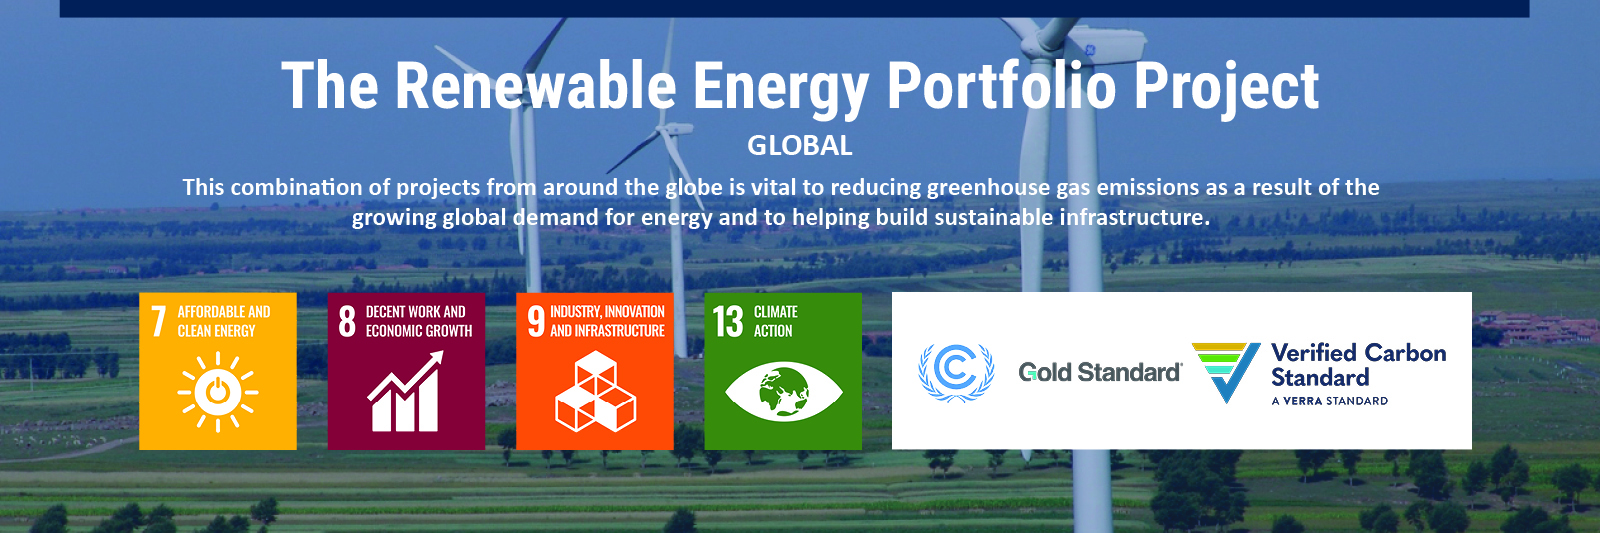 Renewable energy portfolio project